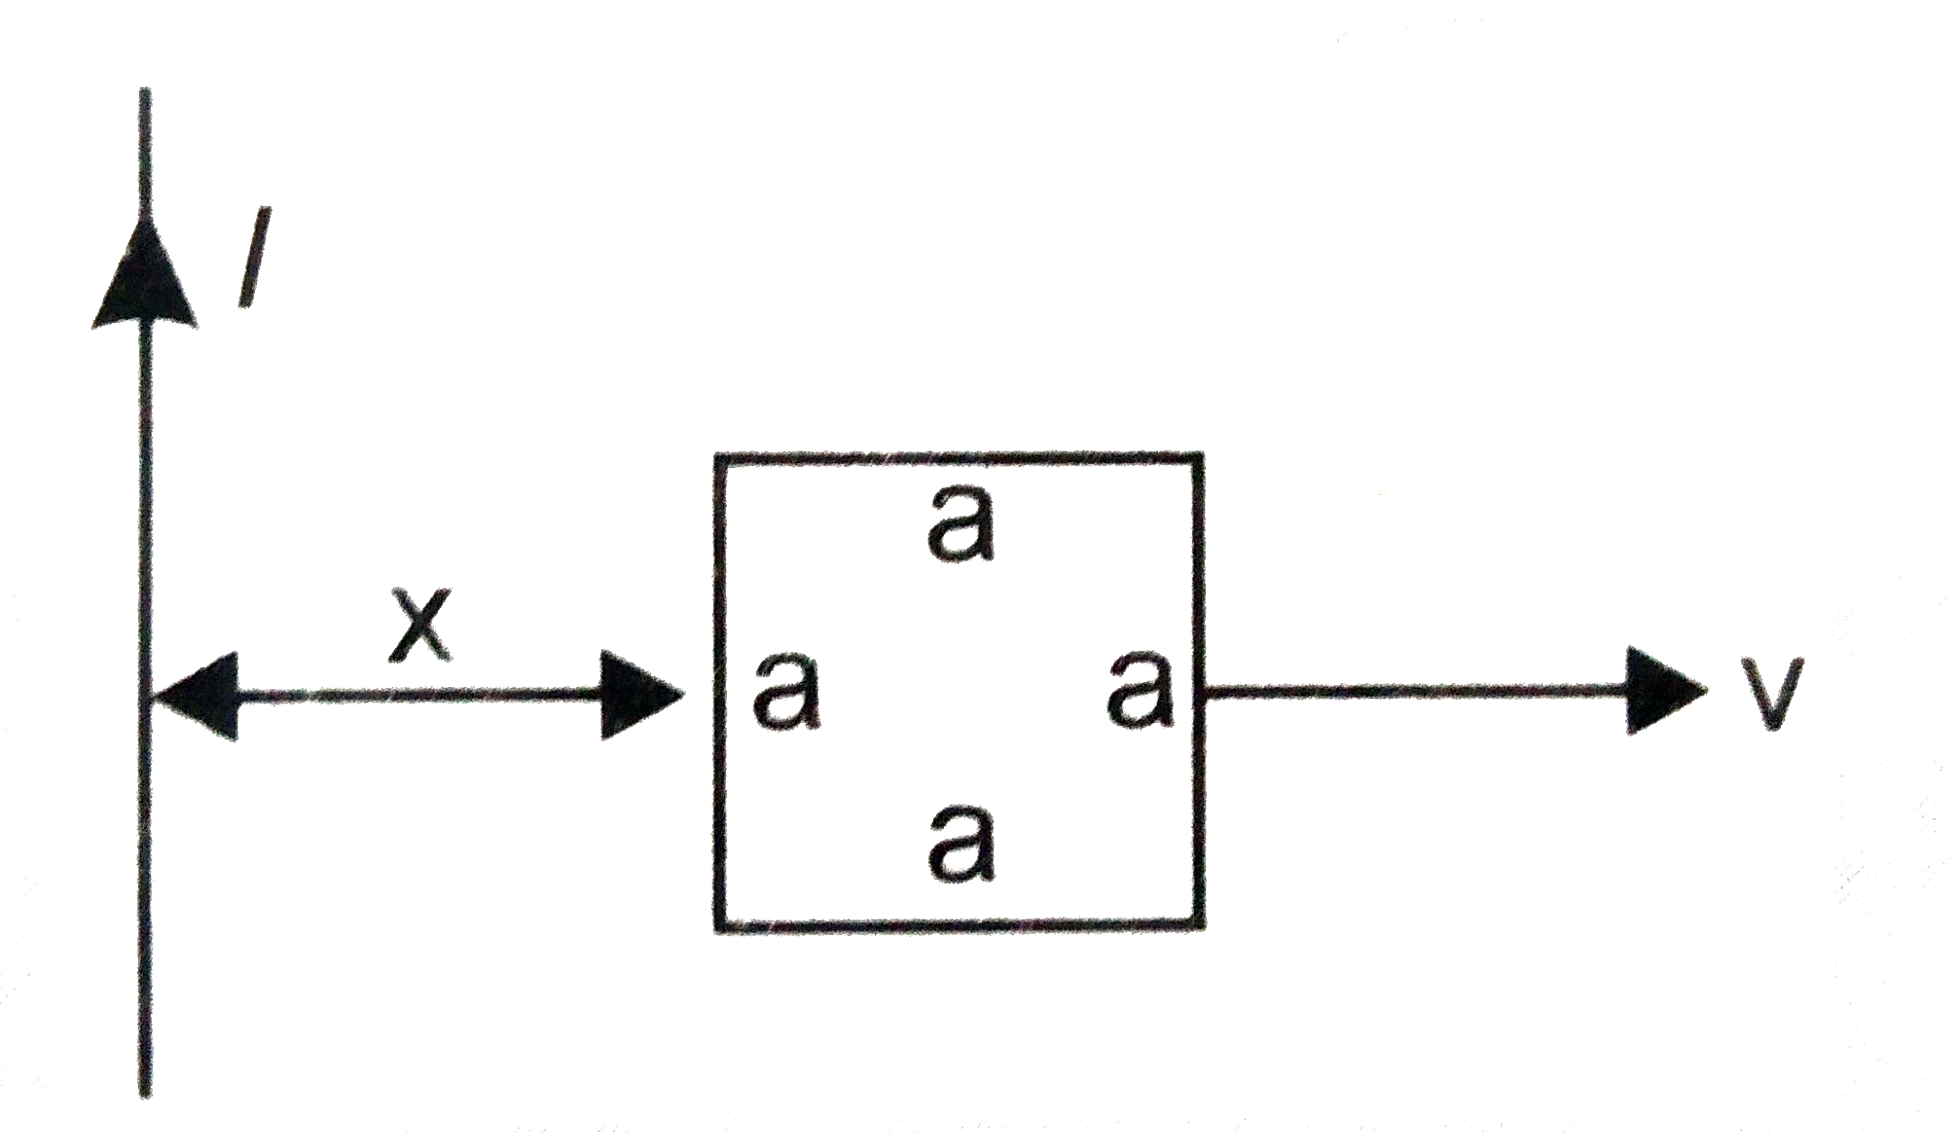 (a) चित्रानुसार एक लंबे, सीधे तार तथा एक वर्गाकार लूप जिसकी एक भुजा की लम्बाई a है के लिए अन्योन्य प्रेरकत्व का व्यंजक प्राप्त कीजिए ।      (b) अब मान लीजिए कि सीधे तार में 50 A की धारा प्रवाहित हो रही है तथा लूप एक स्थितर वेग v=10 मीटर/सेकण्ड से दायीं और गति कर रहा है लूप में प्रेरित वि. वा. बल का परिकलन उस क्षण पर कीजिए जब x=0.2 मीटर हो लूप के लिए a=0.1 मीटर लीजिये तथा यह मान लीजिए कि उसका प्रतिरोध बहुत अधिक है